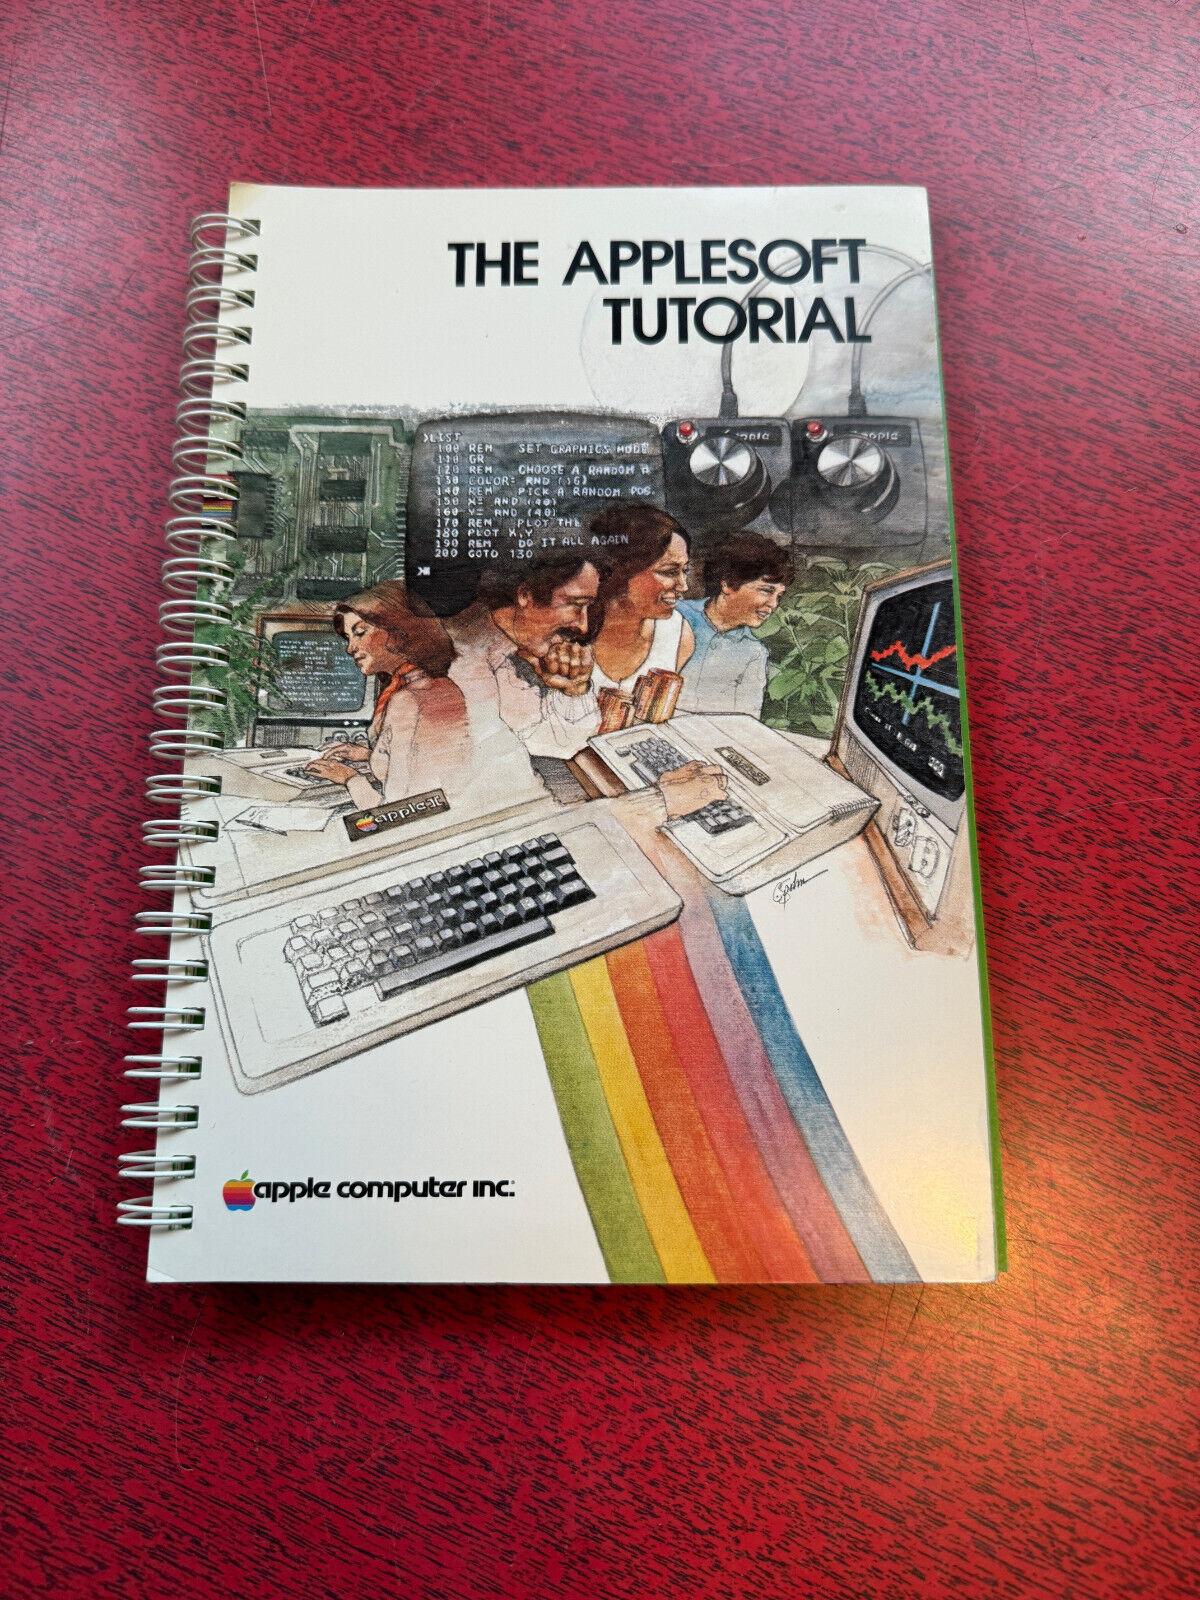 THE APPLESOFT TUTORIAL - Apple Computer Inc. - 1979 1980 Apple II 2